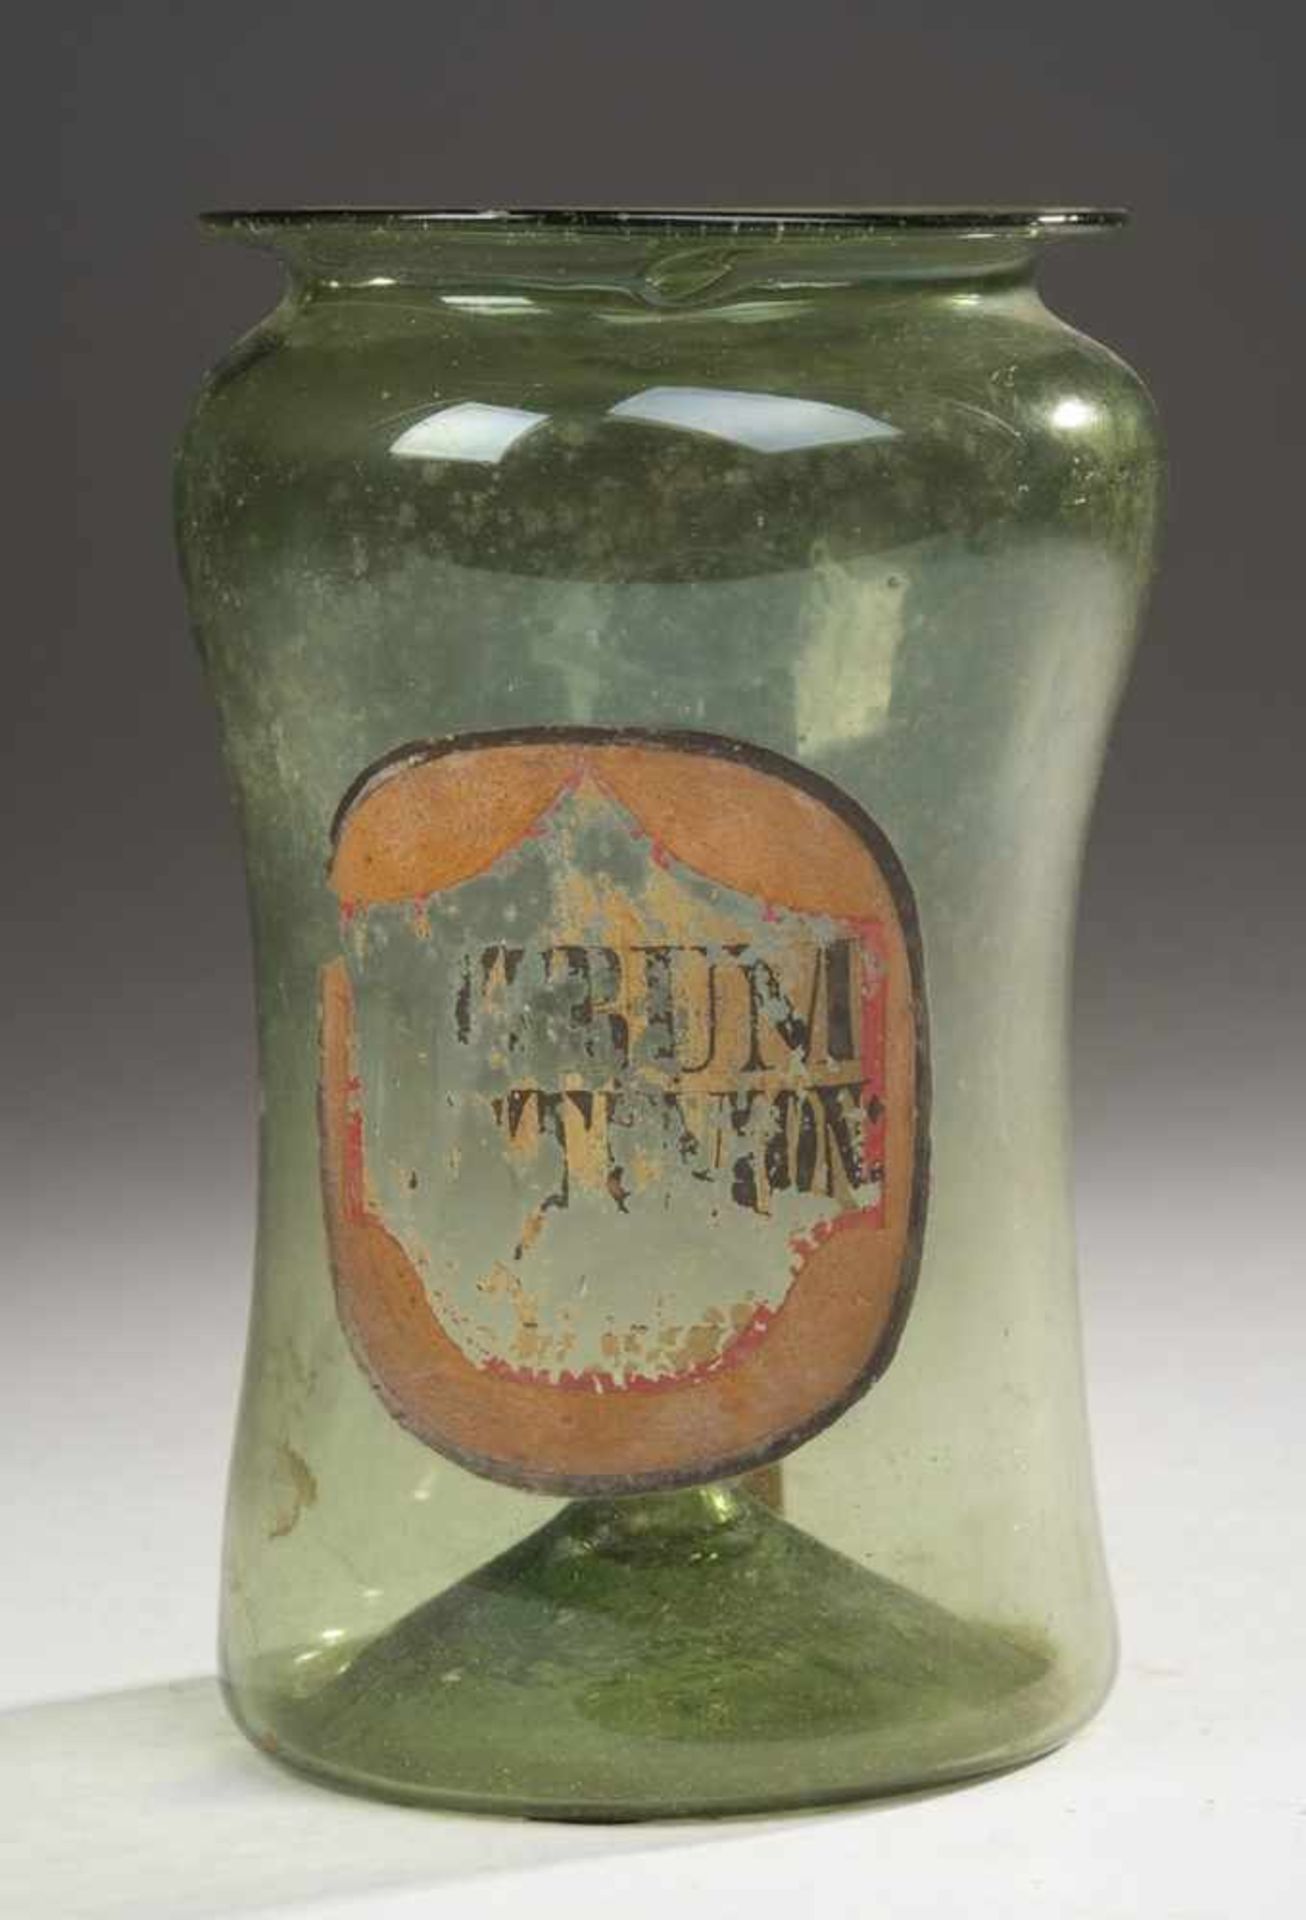 ApothekenglasGrünes Glas. Formgeblasen, Abriss. Zylindrischer, l. einschwingender Korpus, hoch